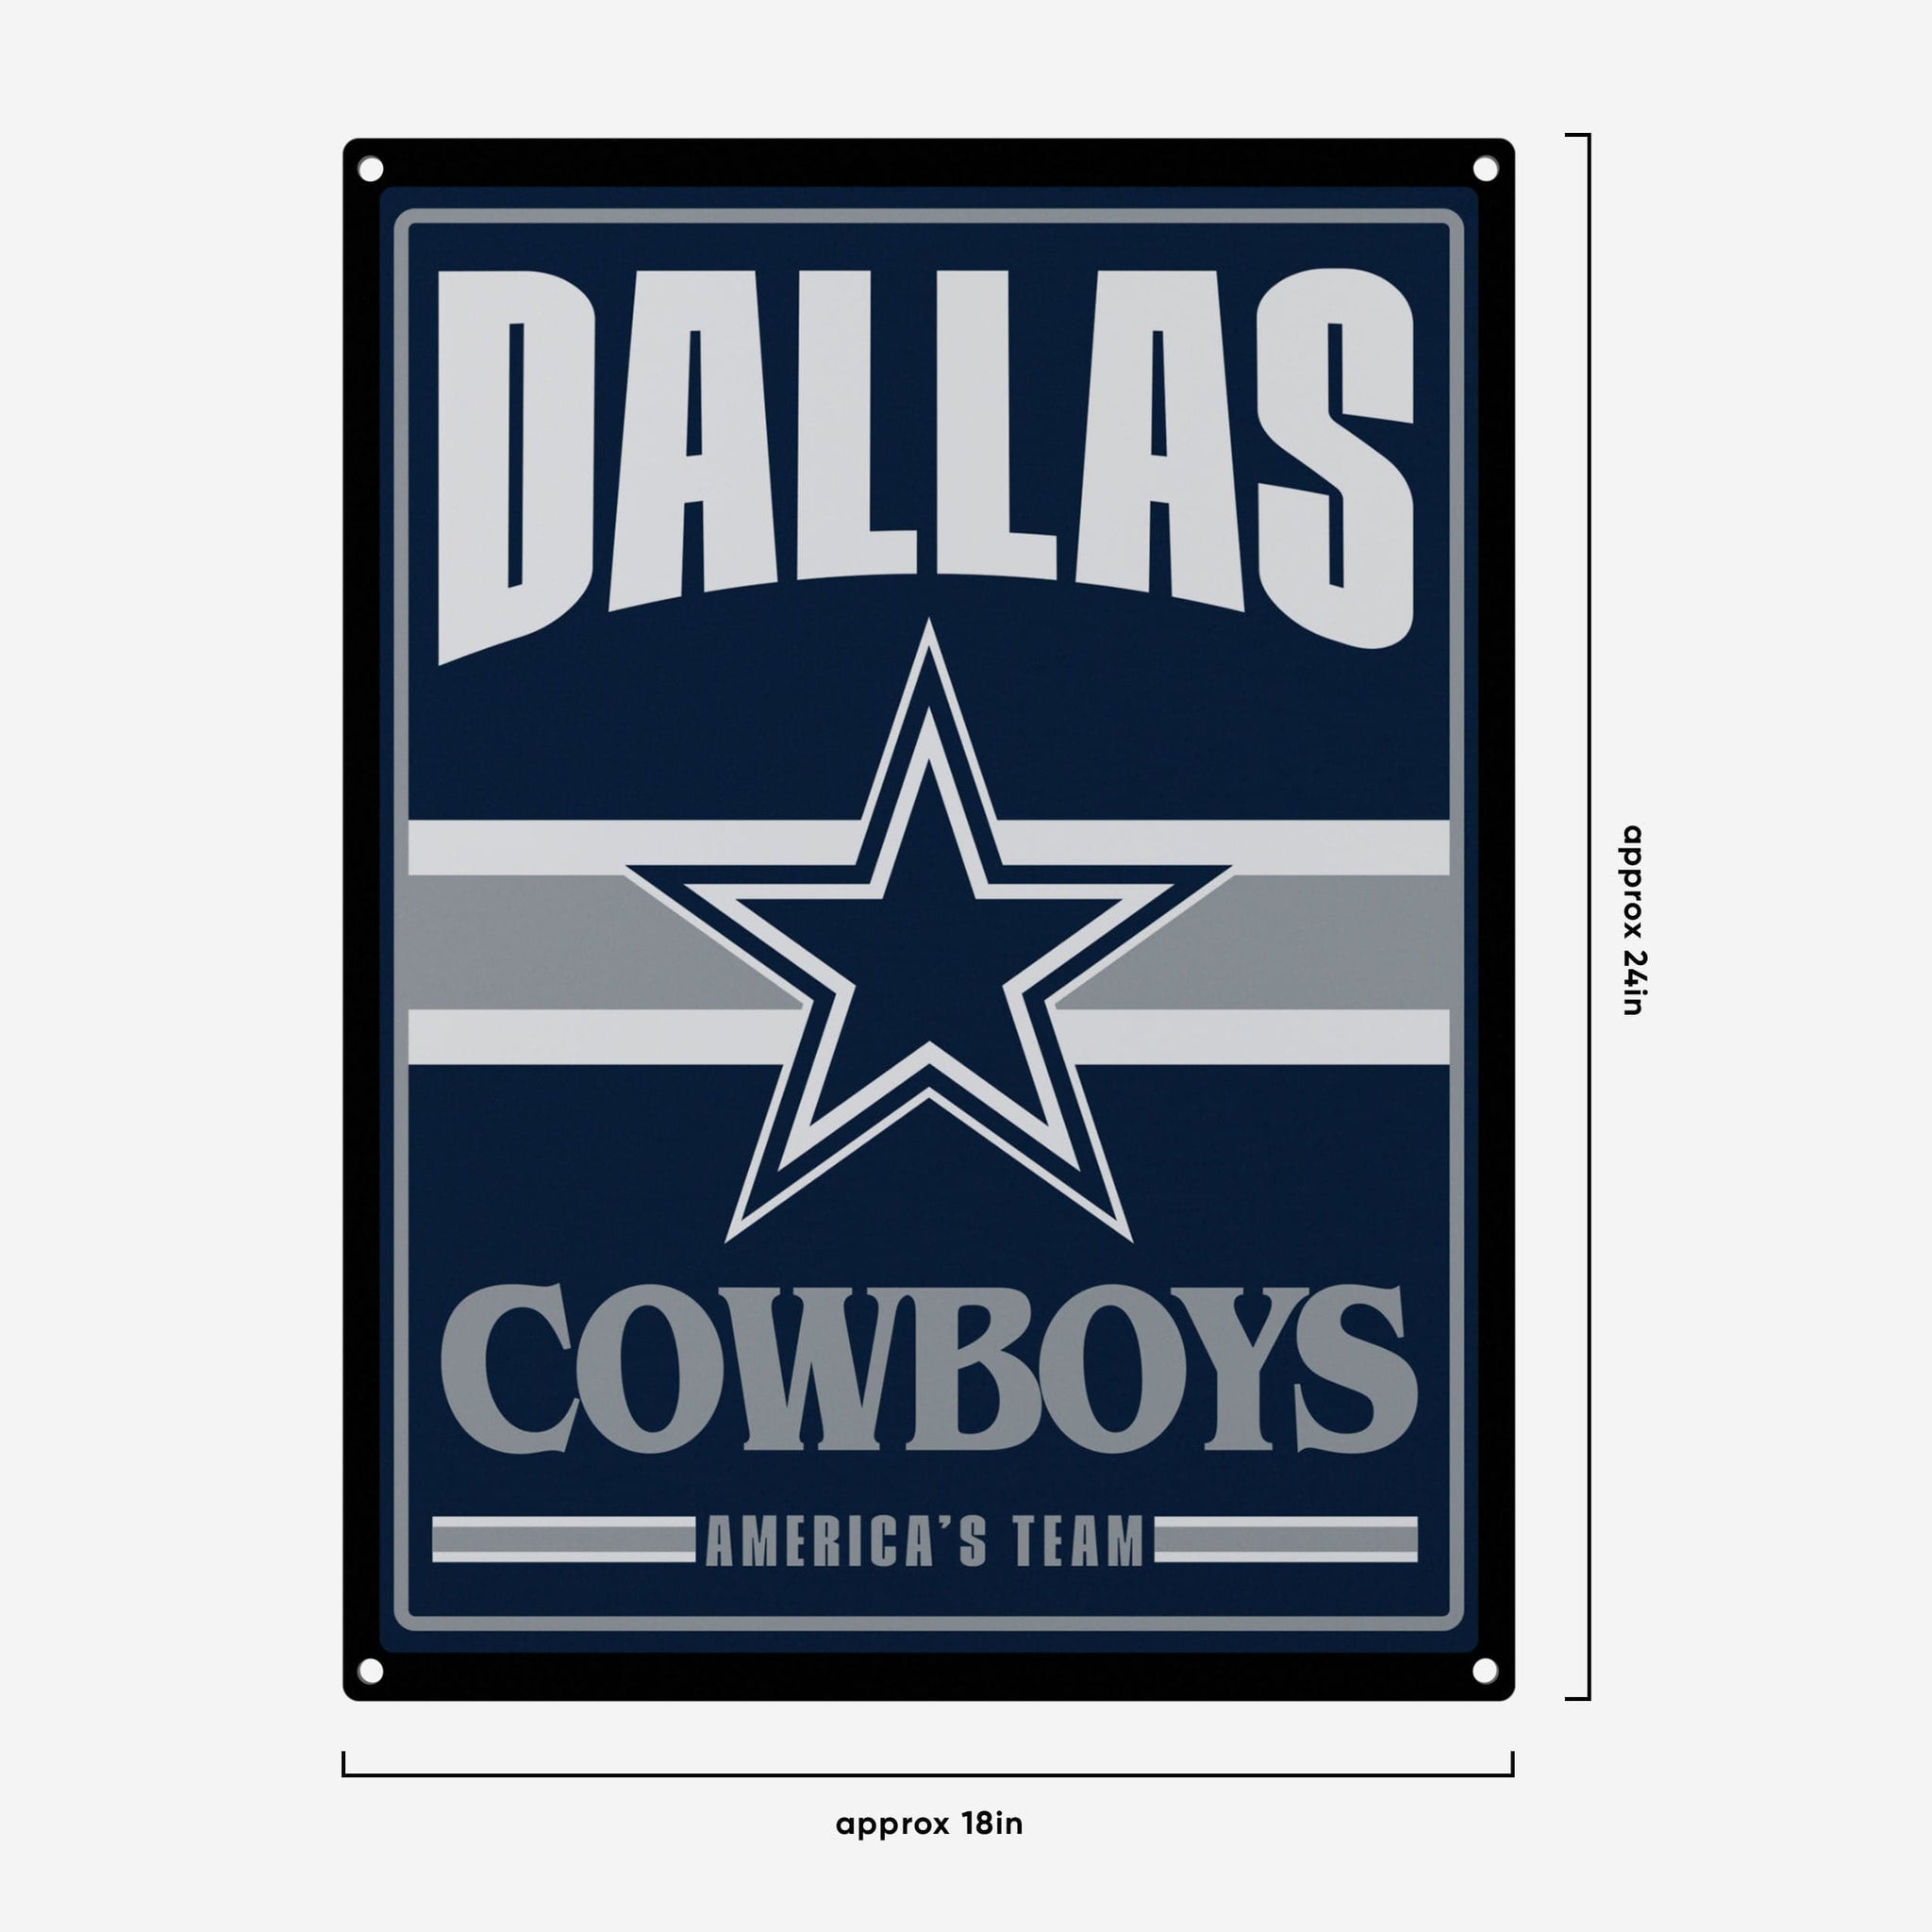 Dallas Cowboys Slogan Can Cooler